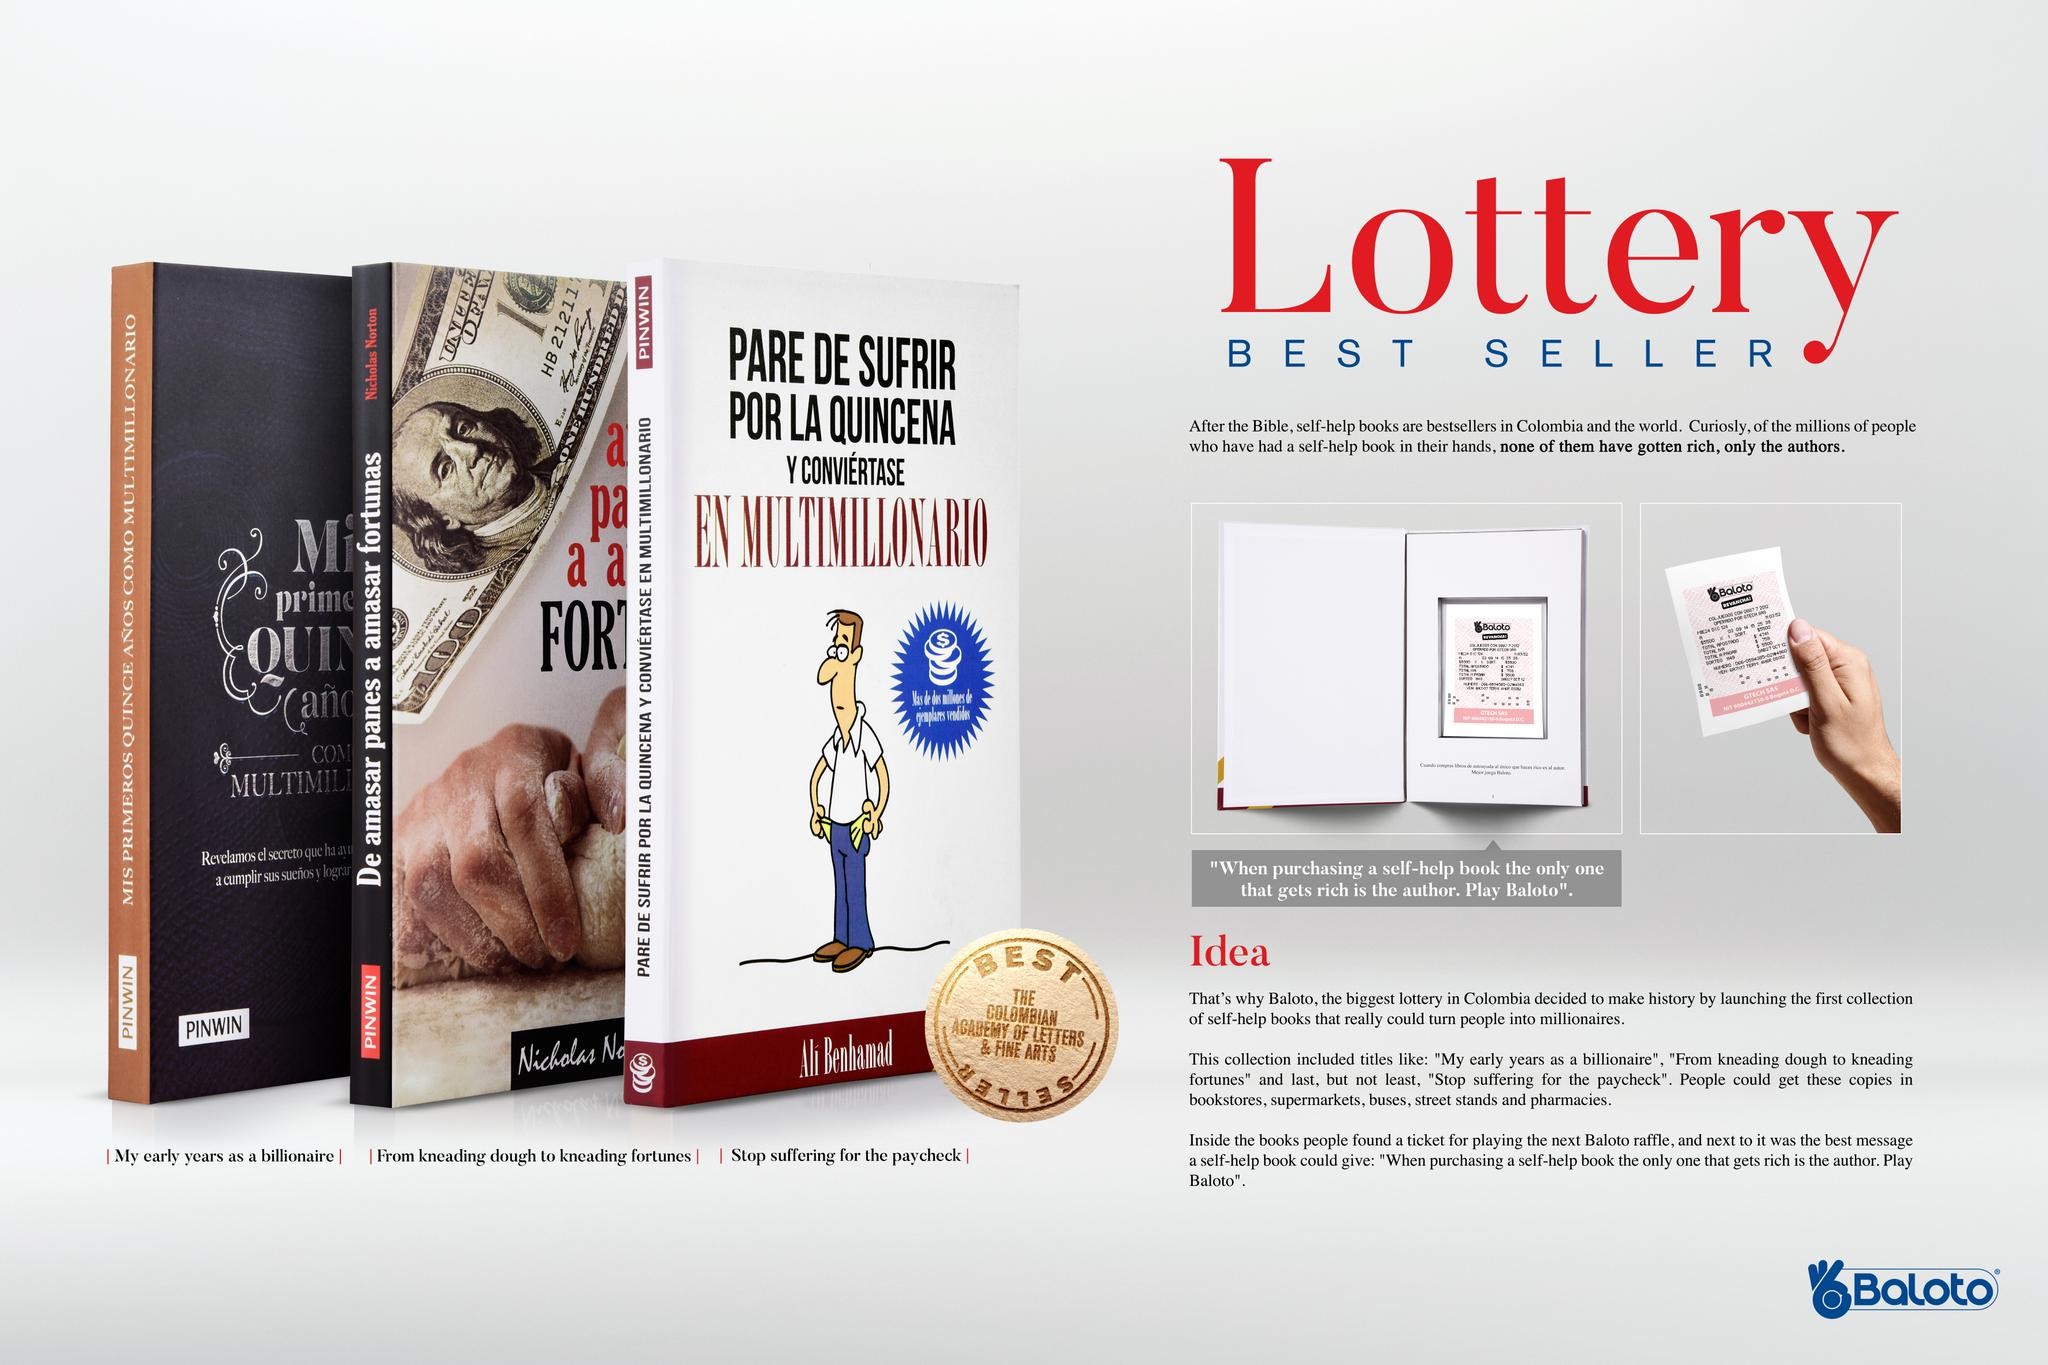 Lottery Best Seller